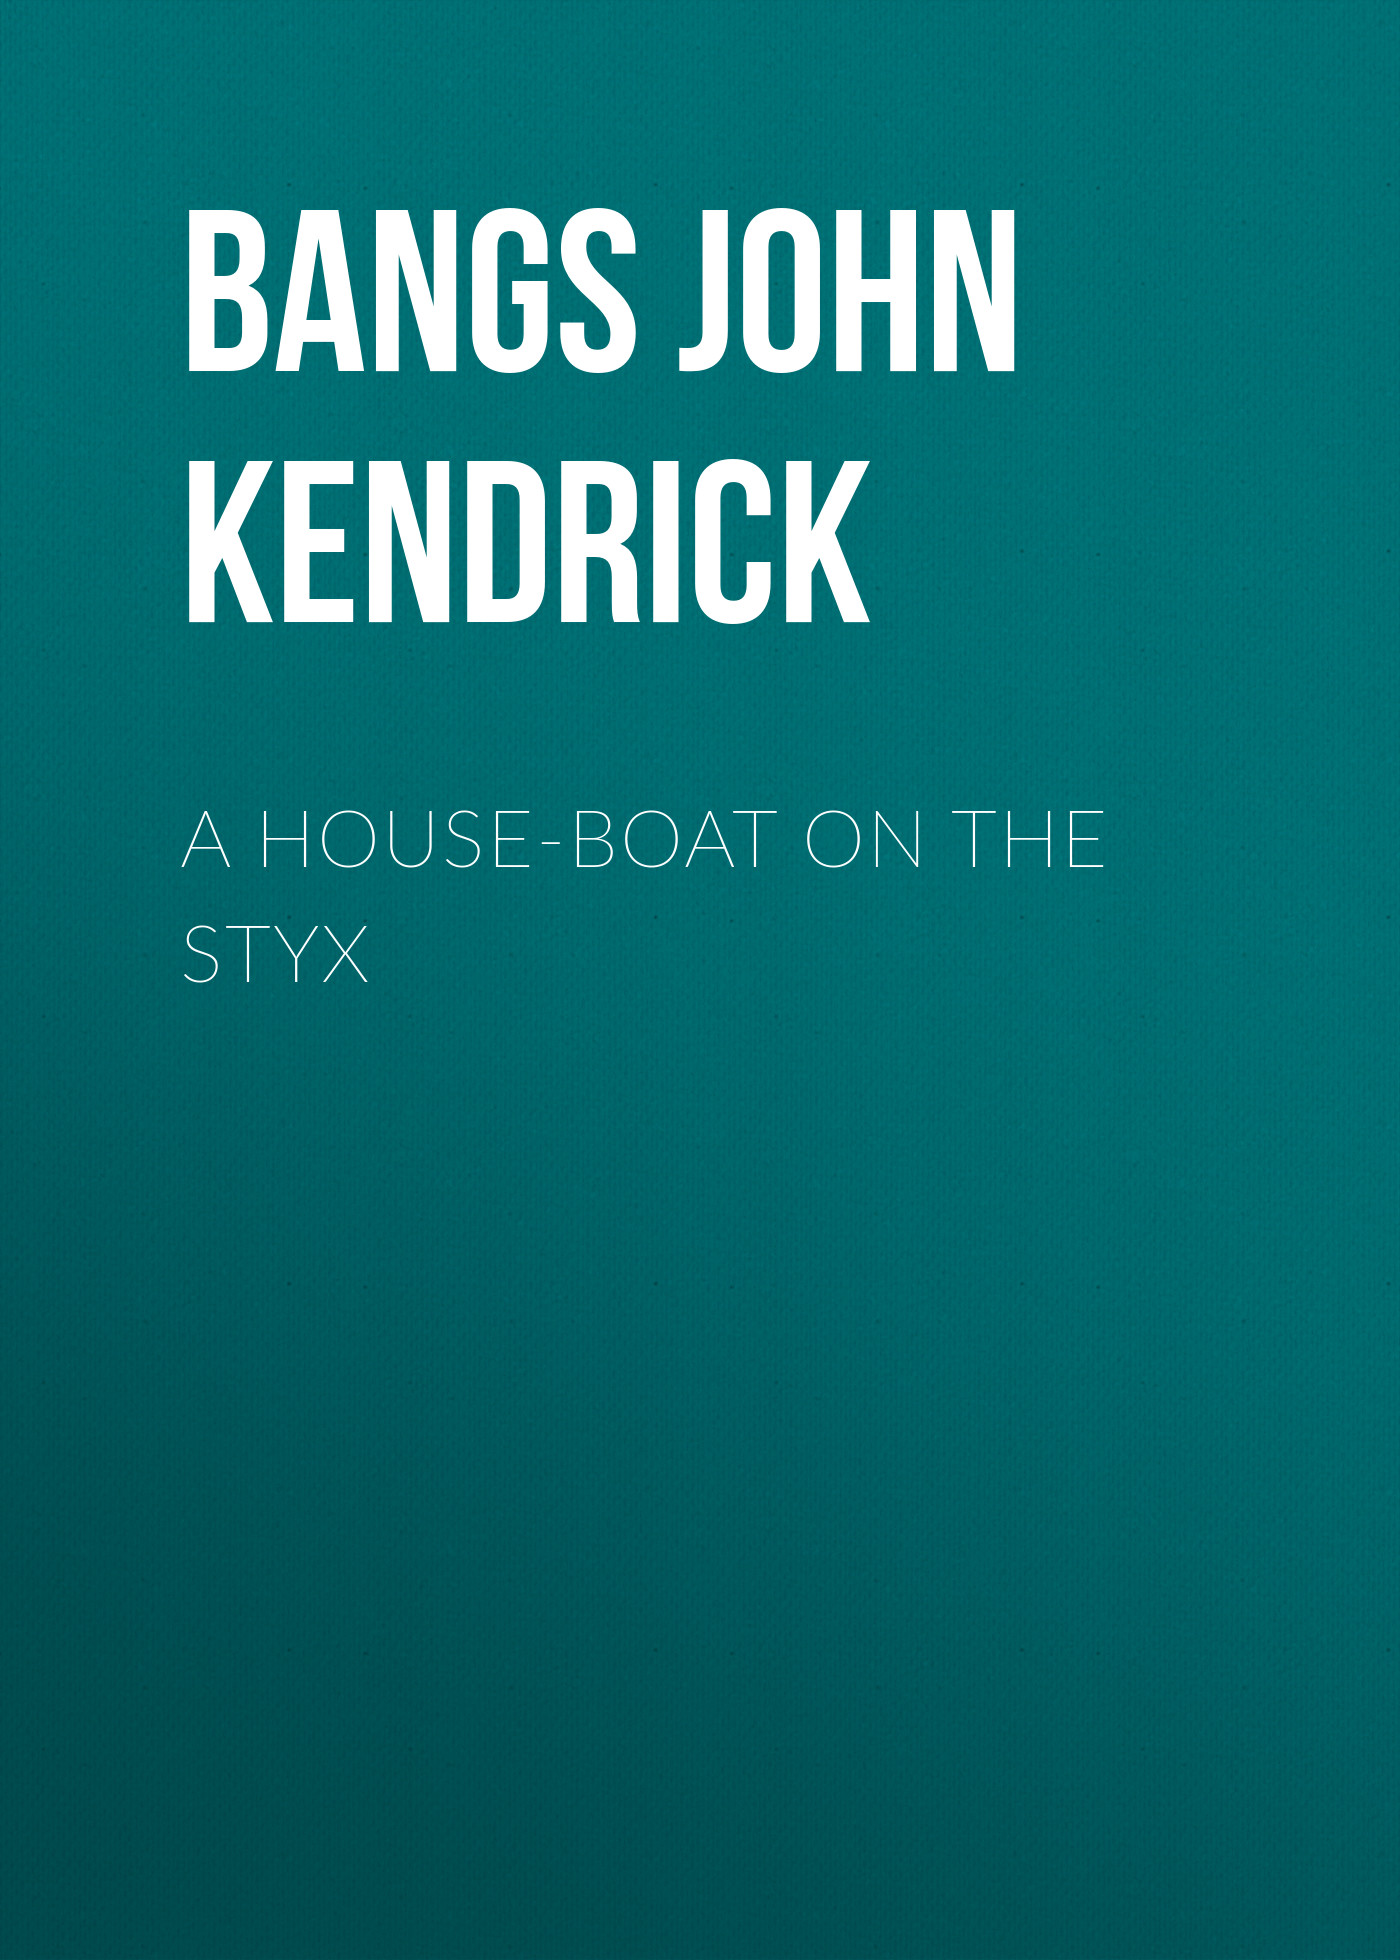 Книга A House-Boat on the Styx из серии , созданная John Bangs, может относится к жанру Зарубежная классика, Зарубежная старинная литература. Стоимость электронной книги A House-Boat on the Styx с идентификатором 36362390 составляет 0 руб.